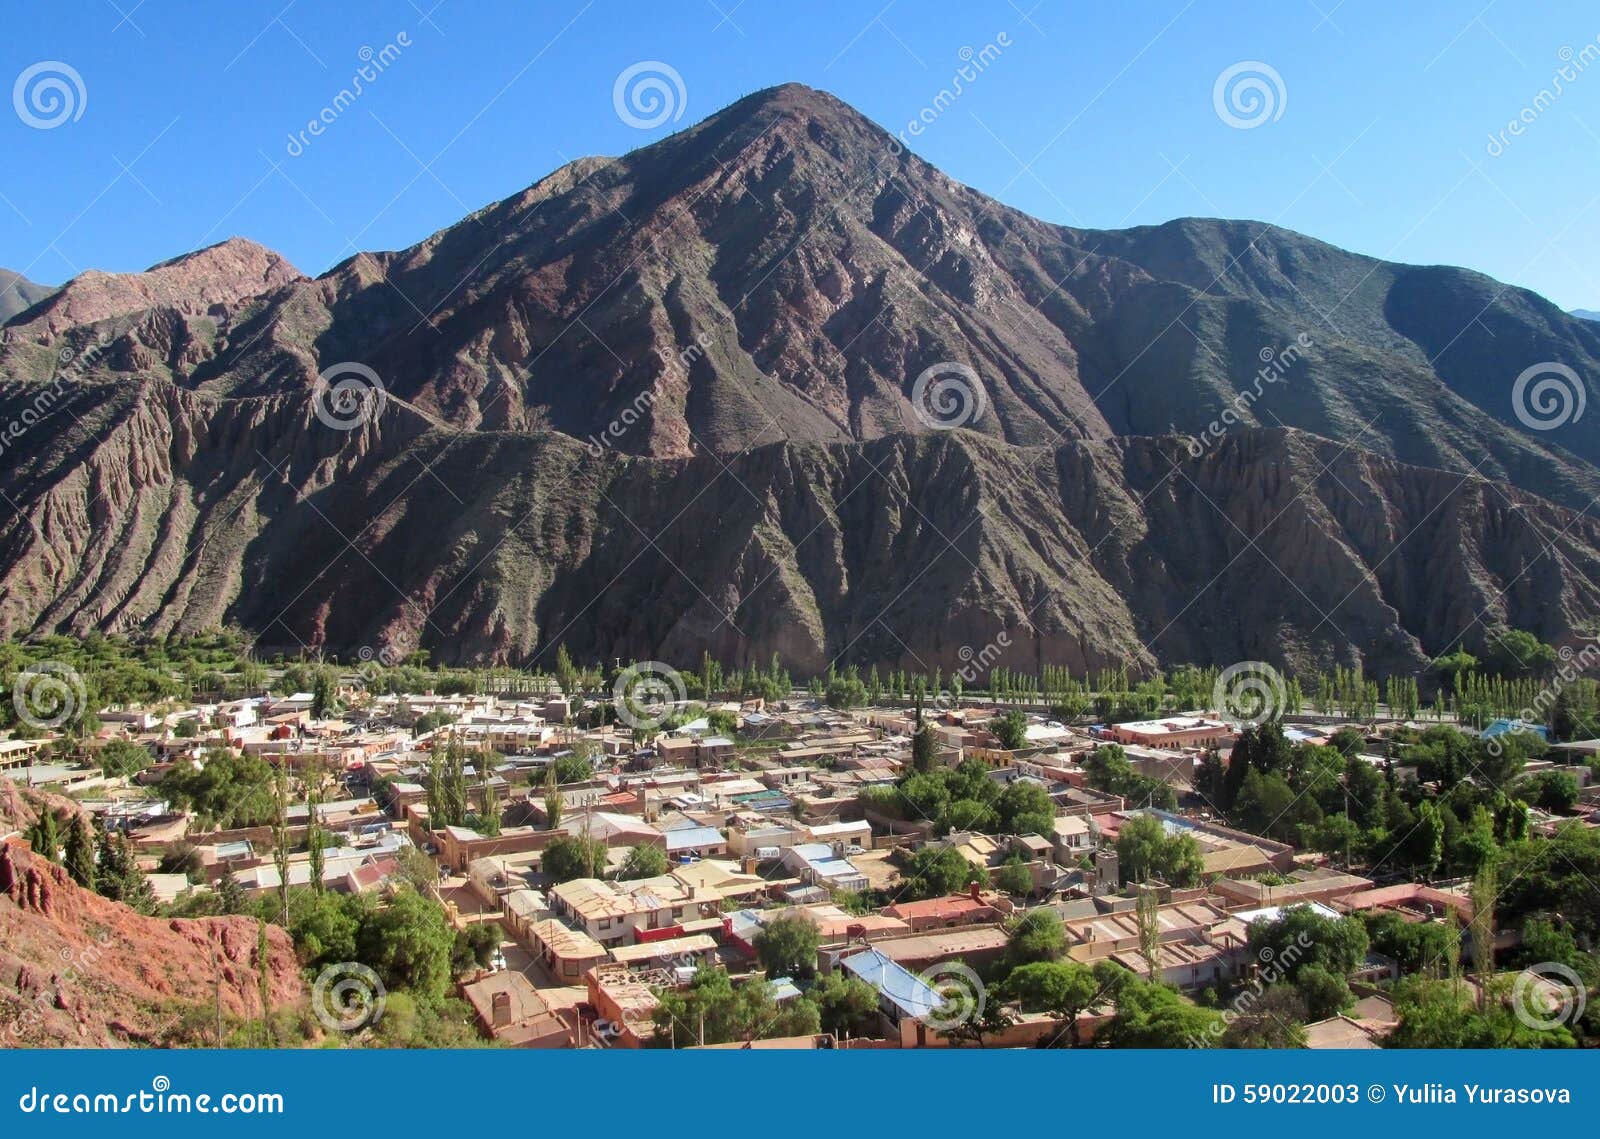 humahuaca village panorama view